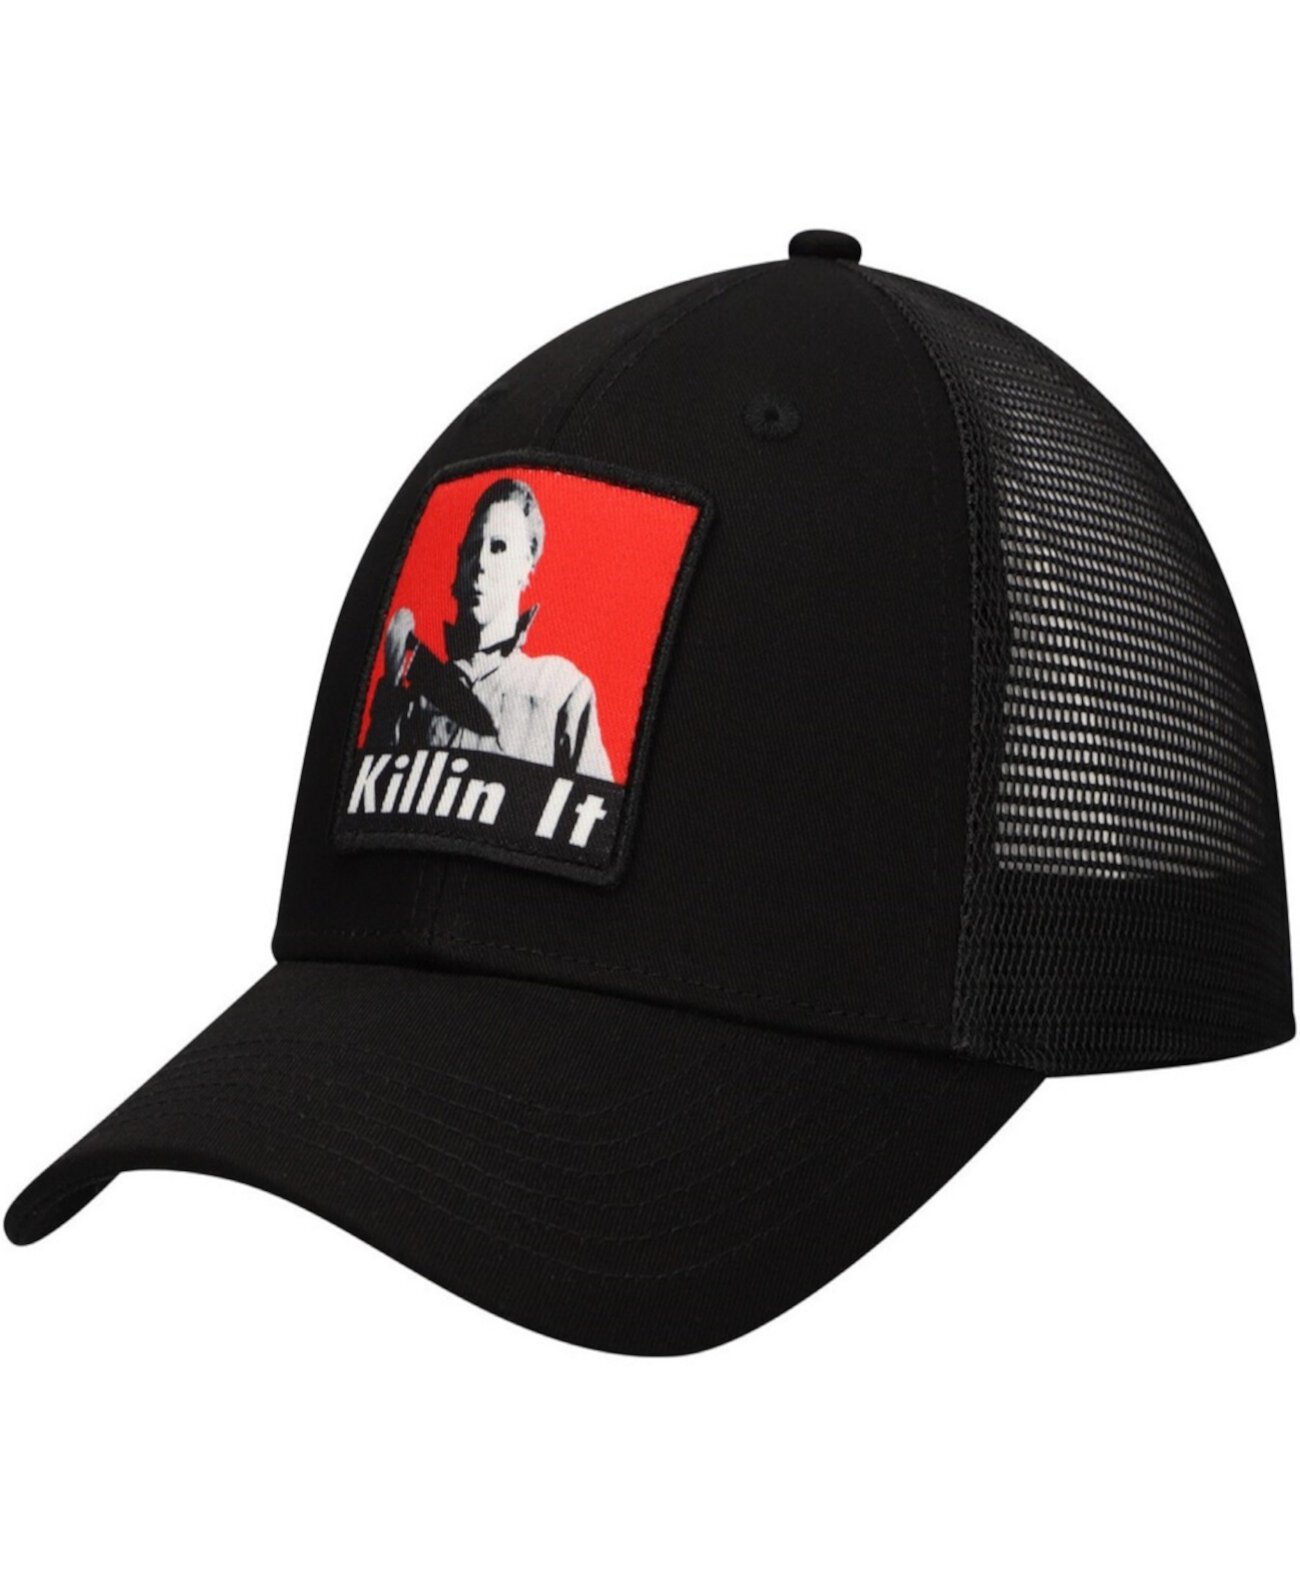 Men's Black Halloween Killin' It Trucker Adjustable Hat Changes